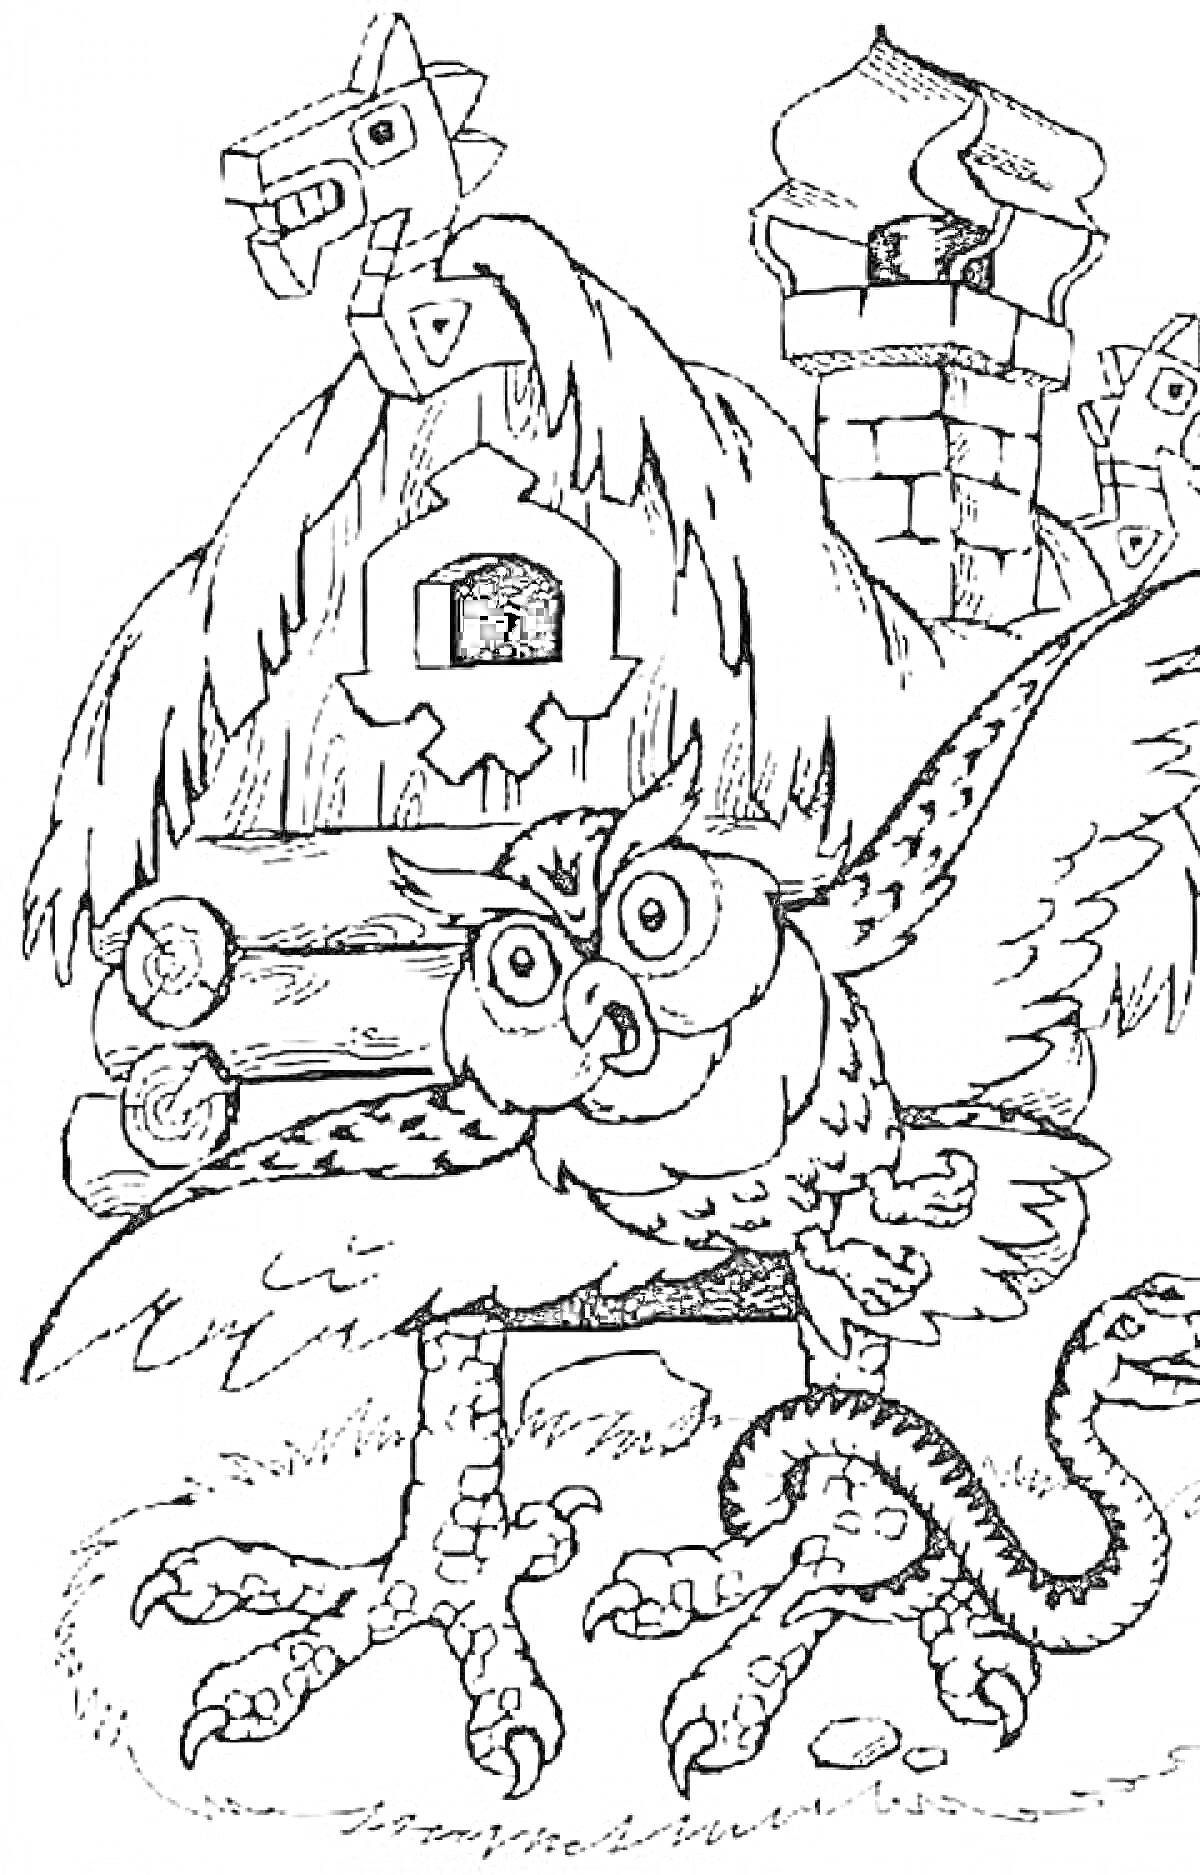 Раскраска Сова, змея, избушка на курьих ножках, дуб, соломенная крыша, и сказочное окружение